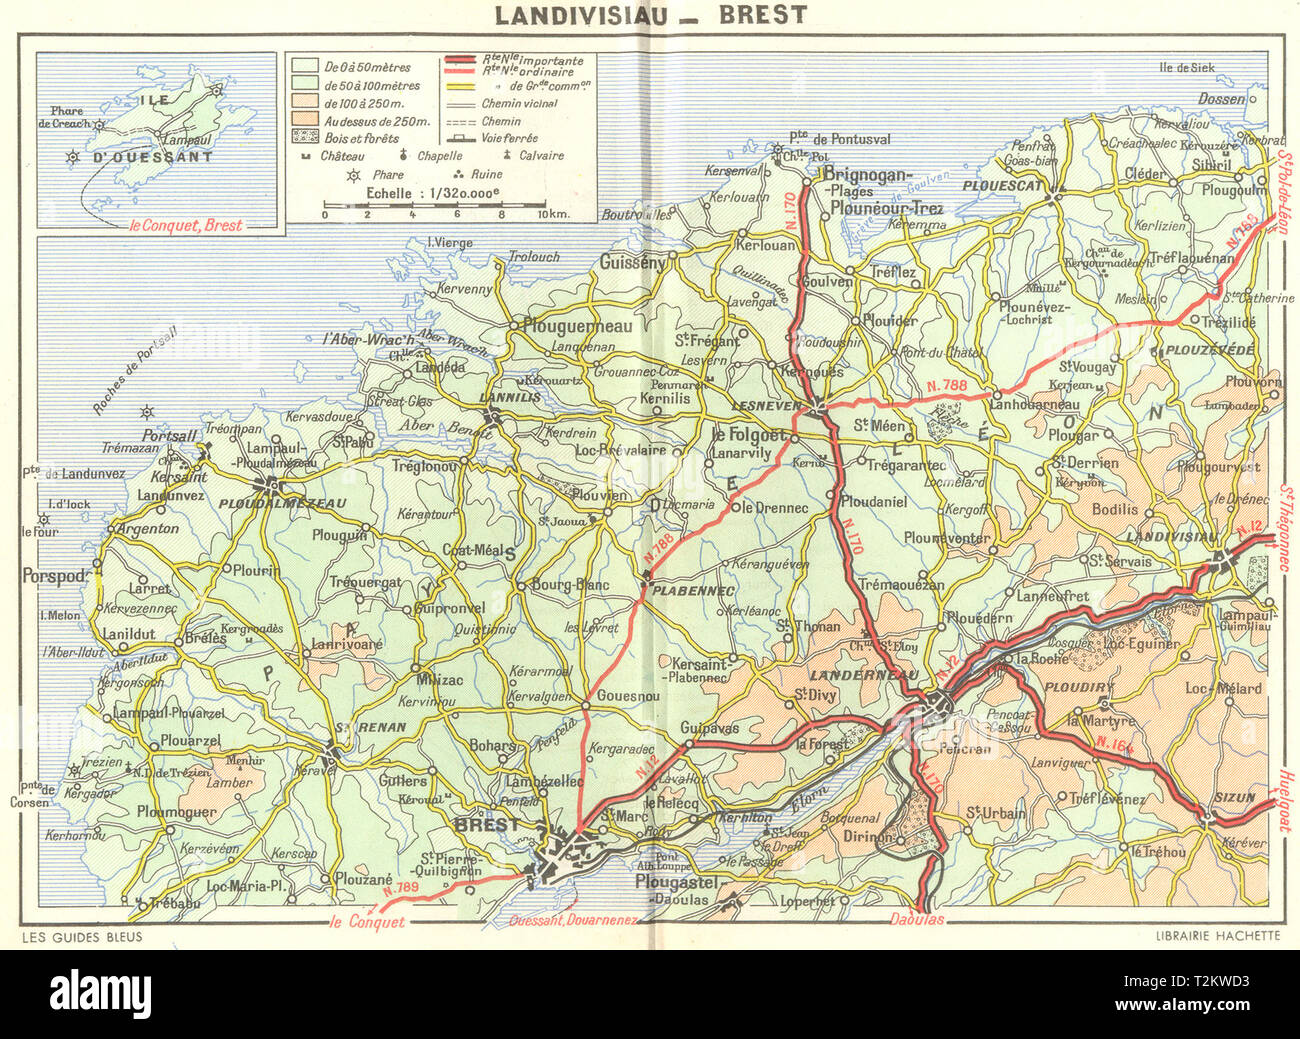 BREST. Cote Leon St-Pol-Conquet. Landivisiau  1948 old vintage map plan chart Stock Photo